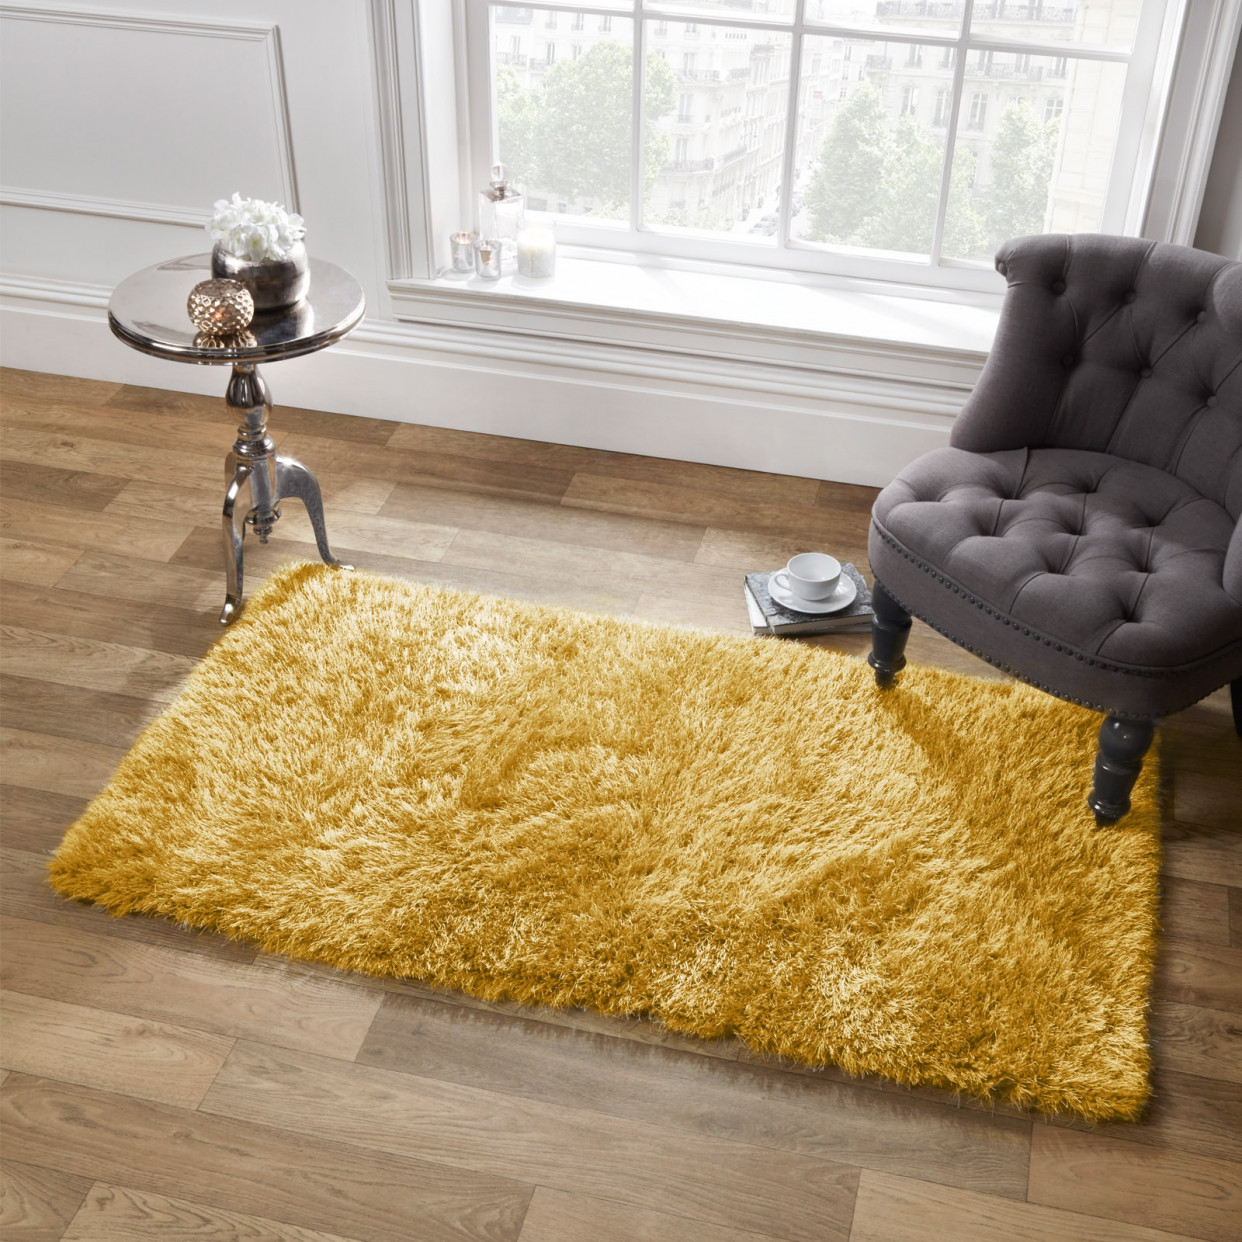 Sienna Large Shaggy Soft Floor Rug 5cm Pile, Ochre Yellow - 120 x 170cm>